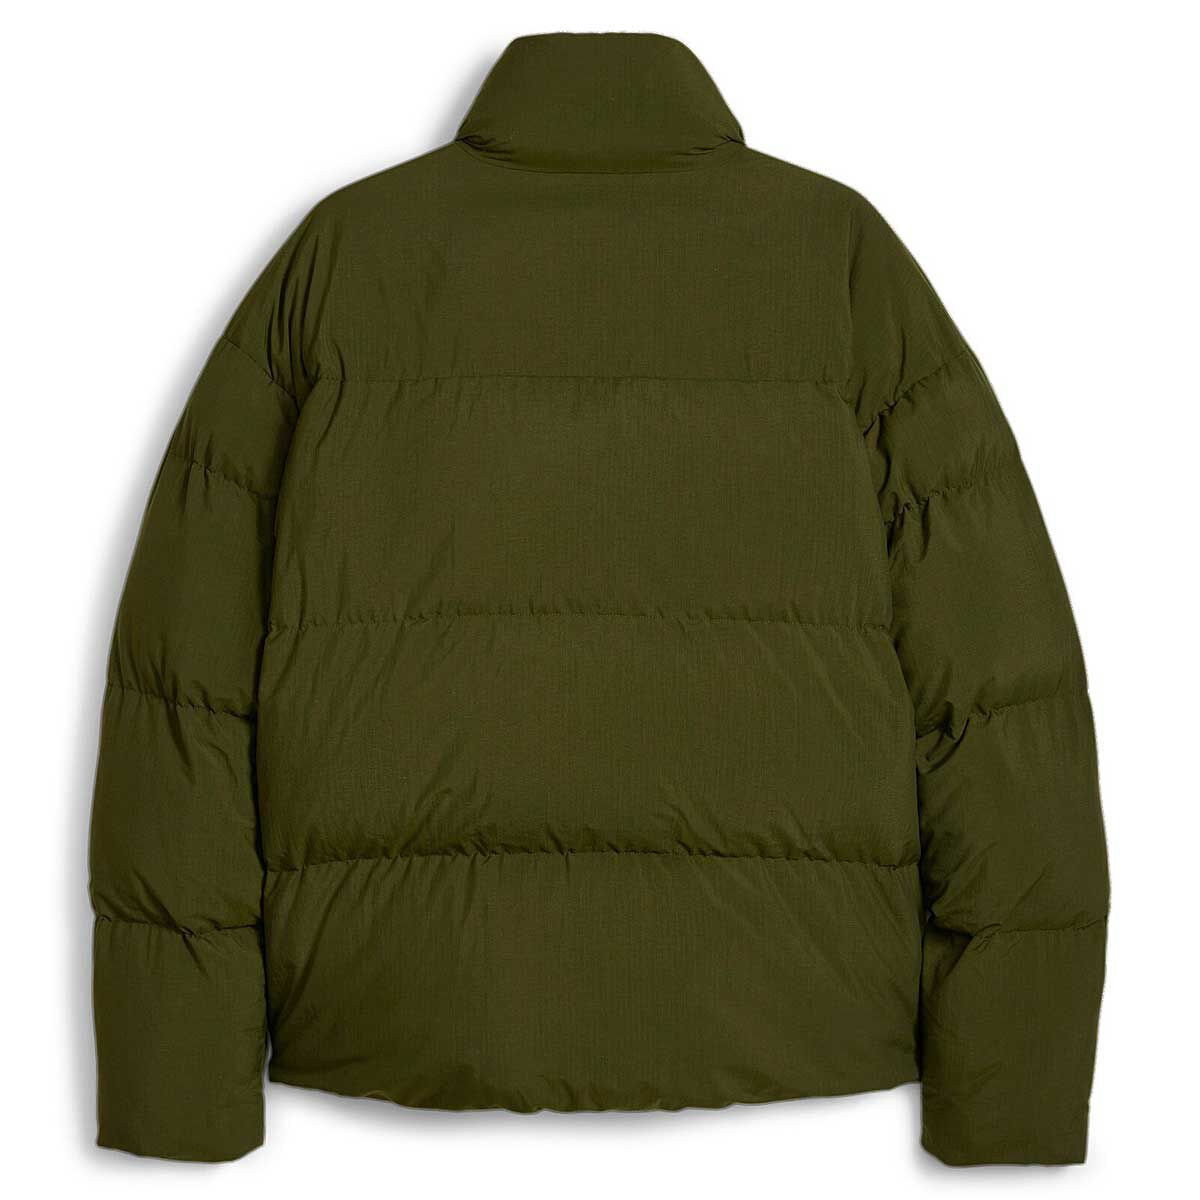 Buy Men's Green Oversized Puffer Jacket Online at Bewakoof